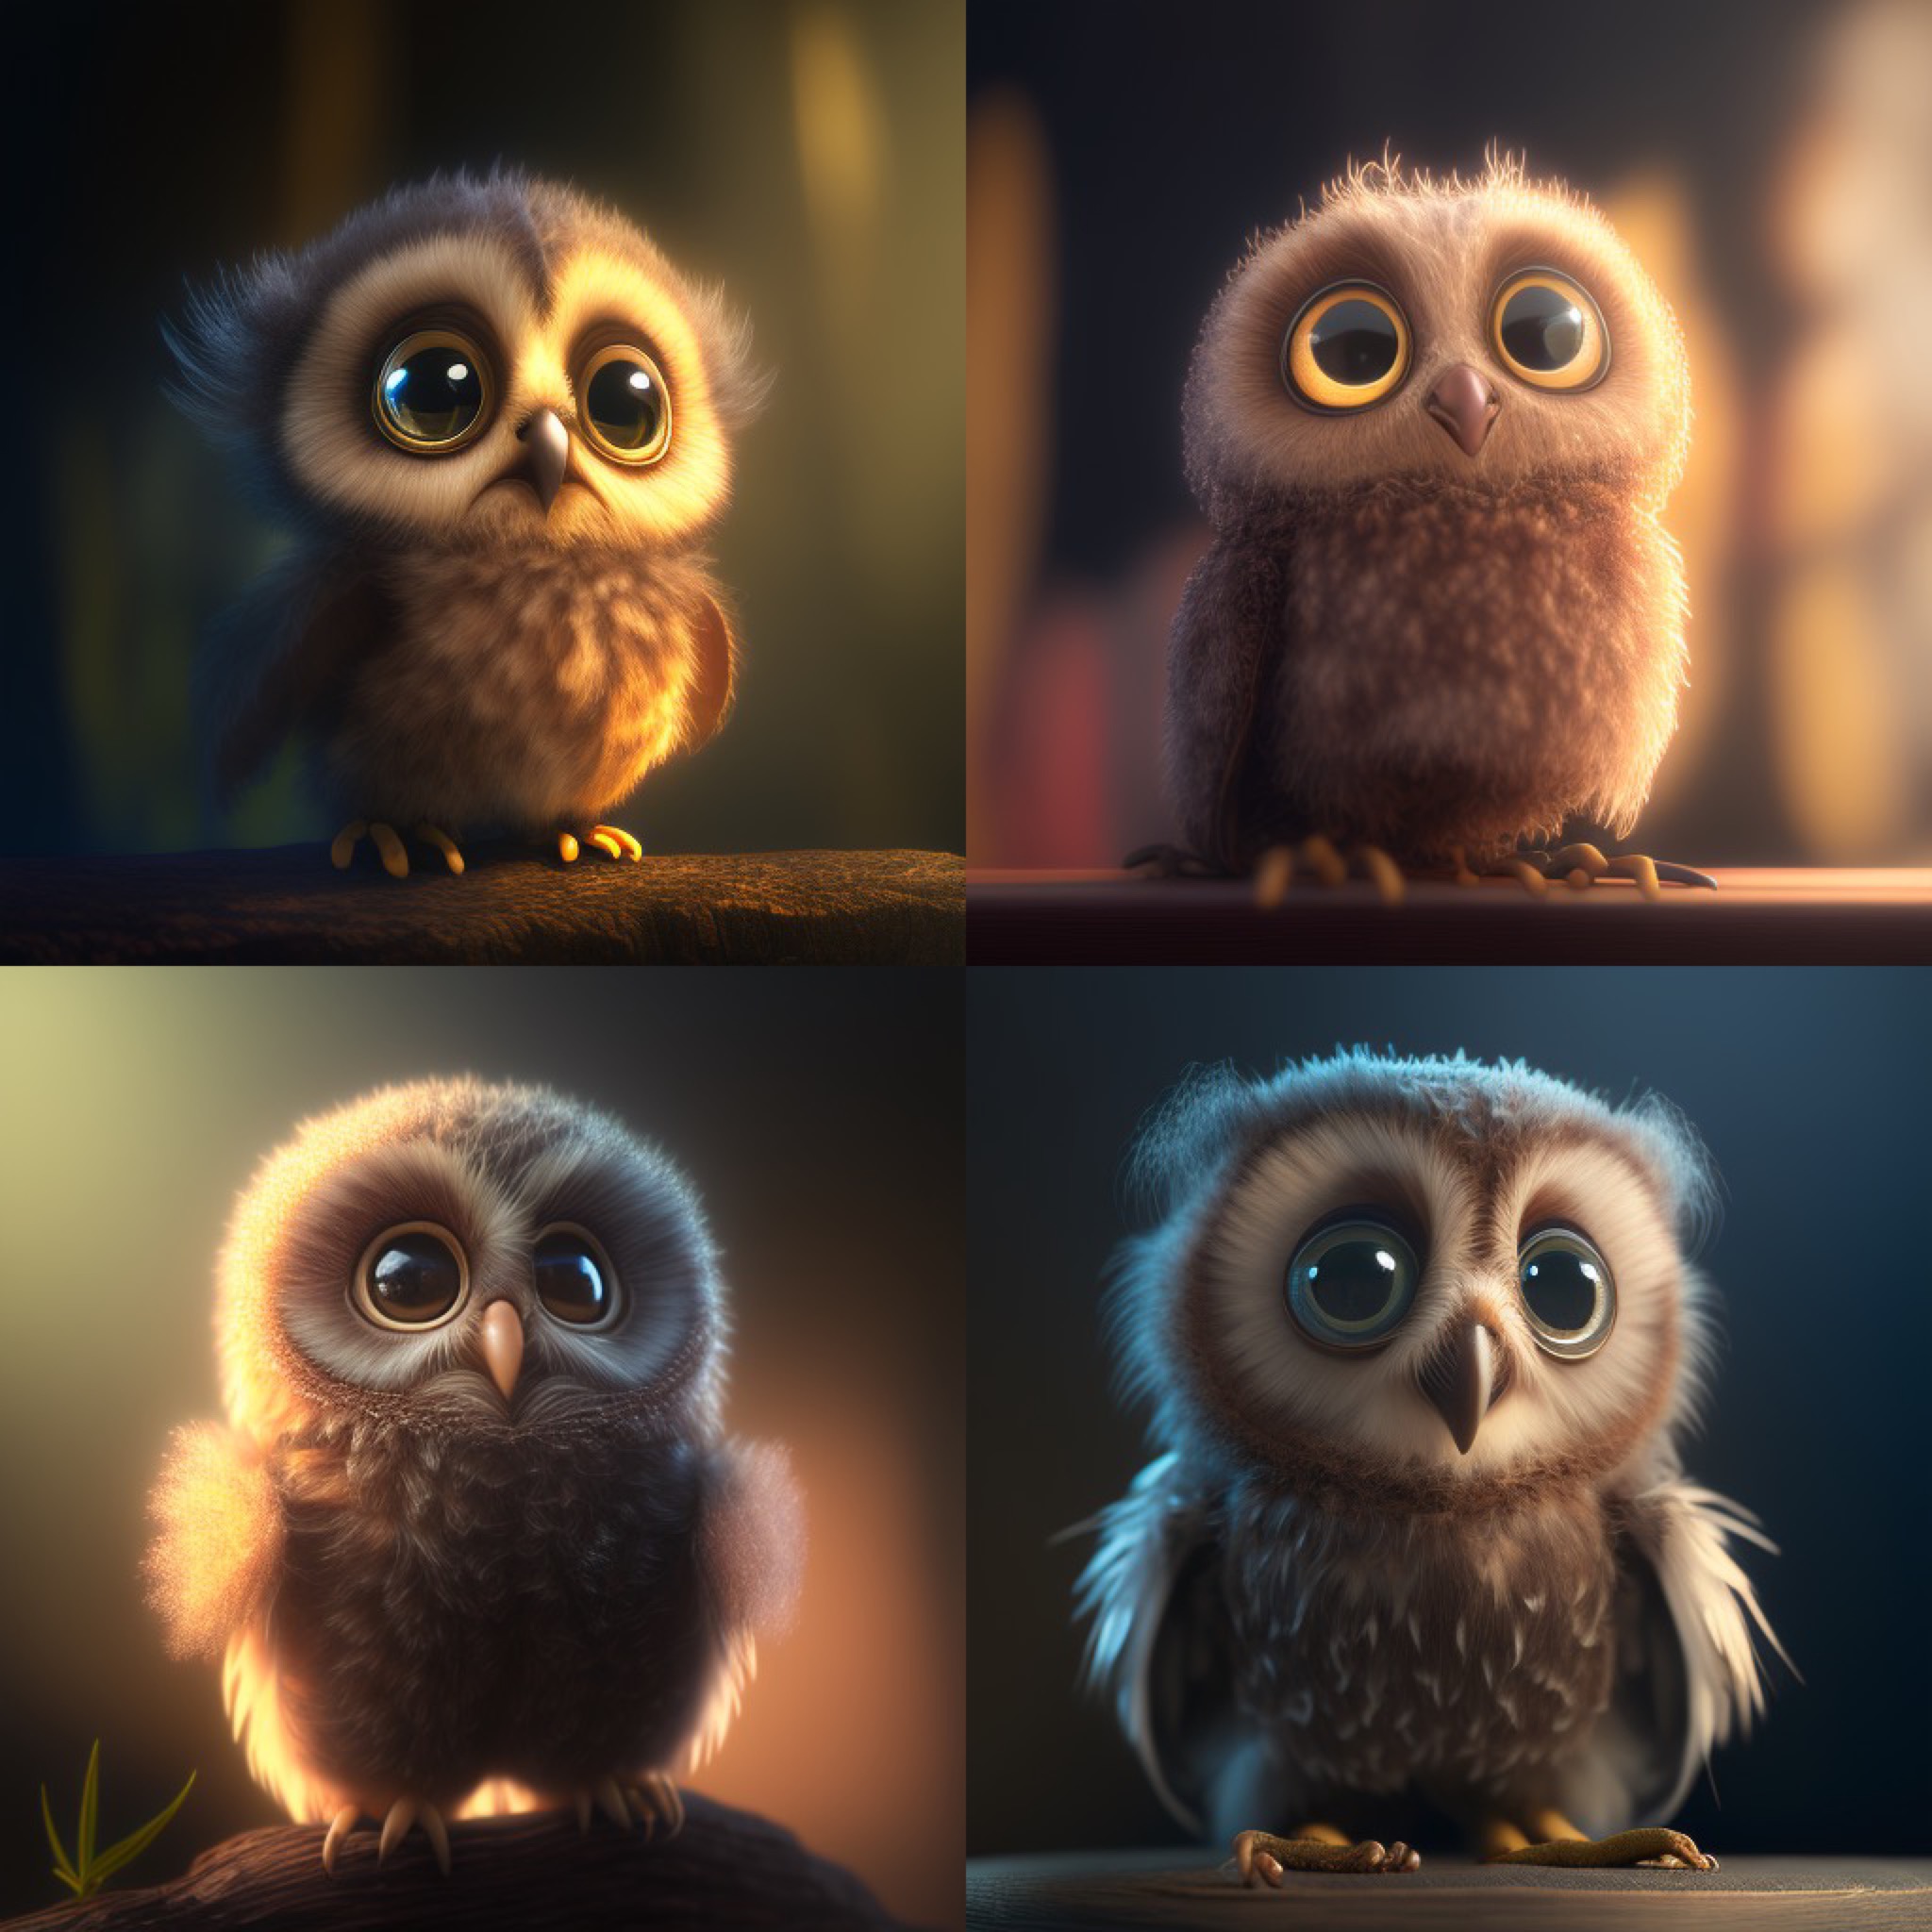 NamAir_cute_baby_owl_big_eyes.jpg